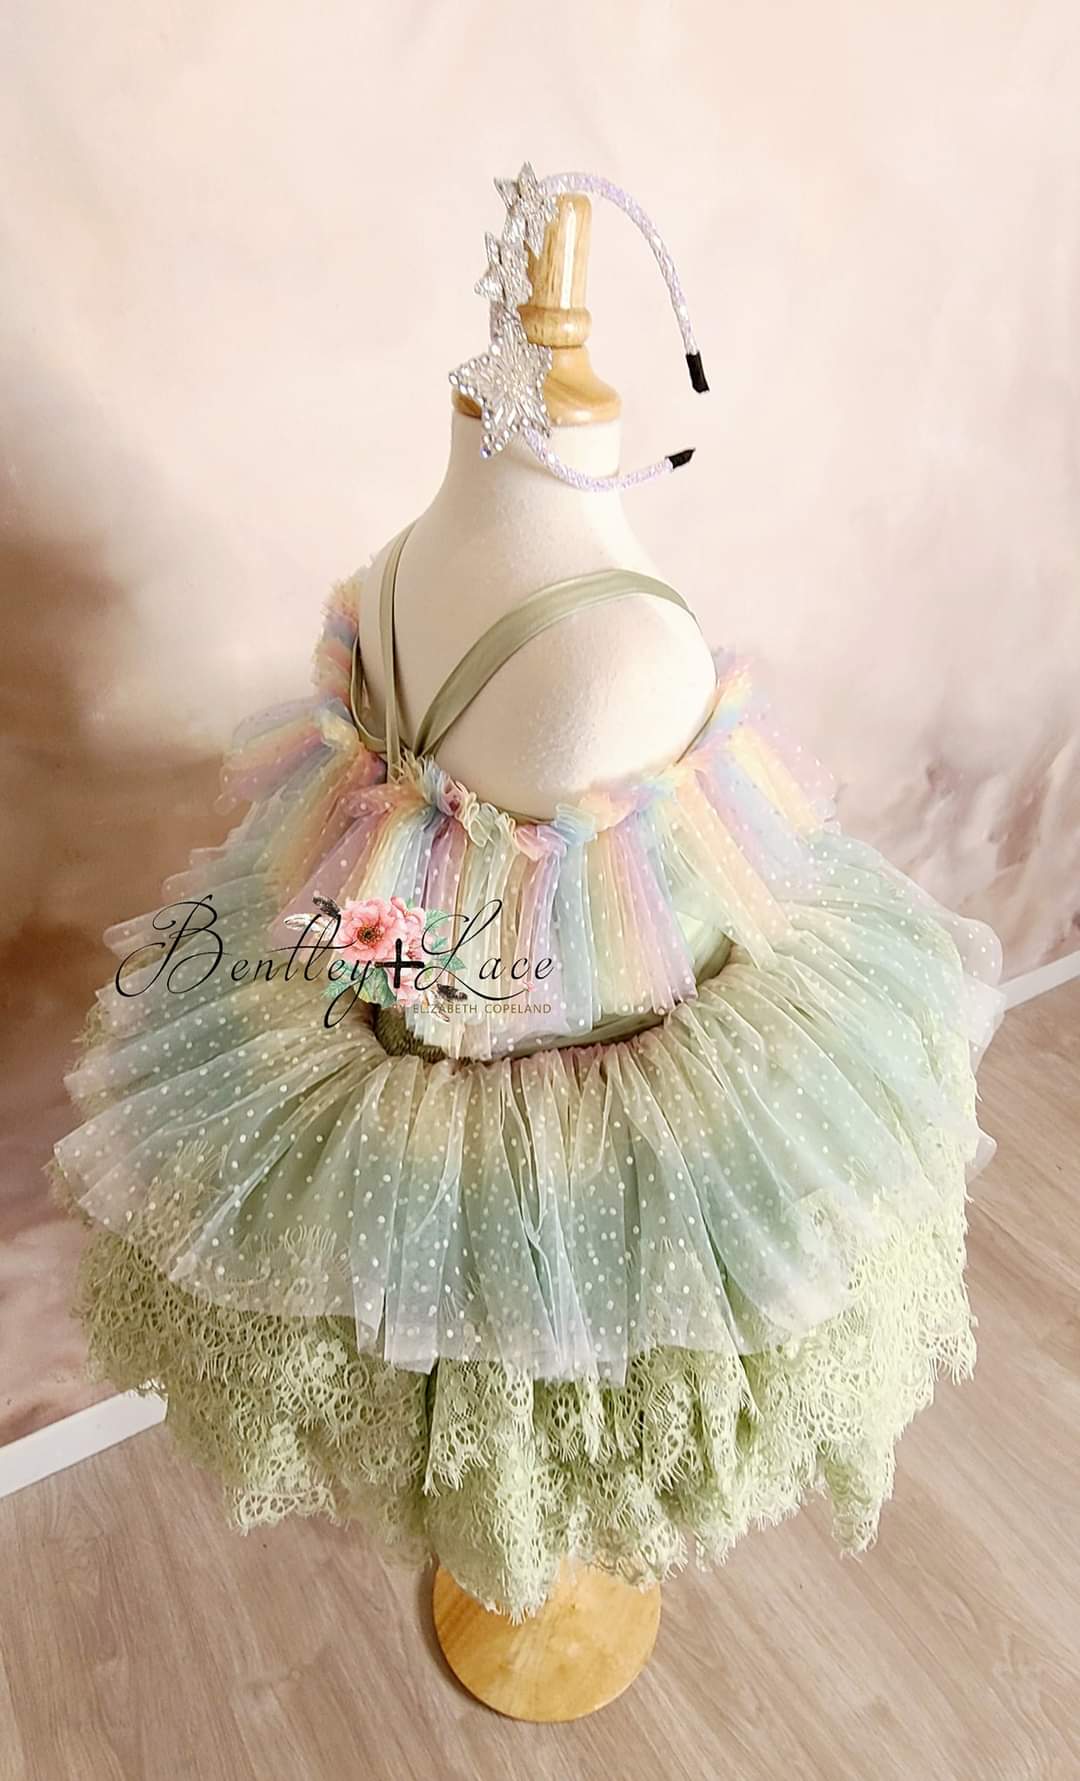 Confetti - Petal "Rainbow Cupcake" Petal Length Dress (3 Year-Petite 5 Year)